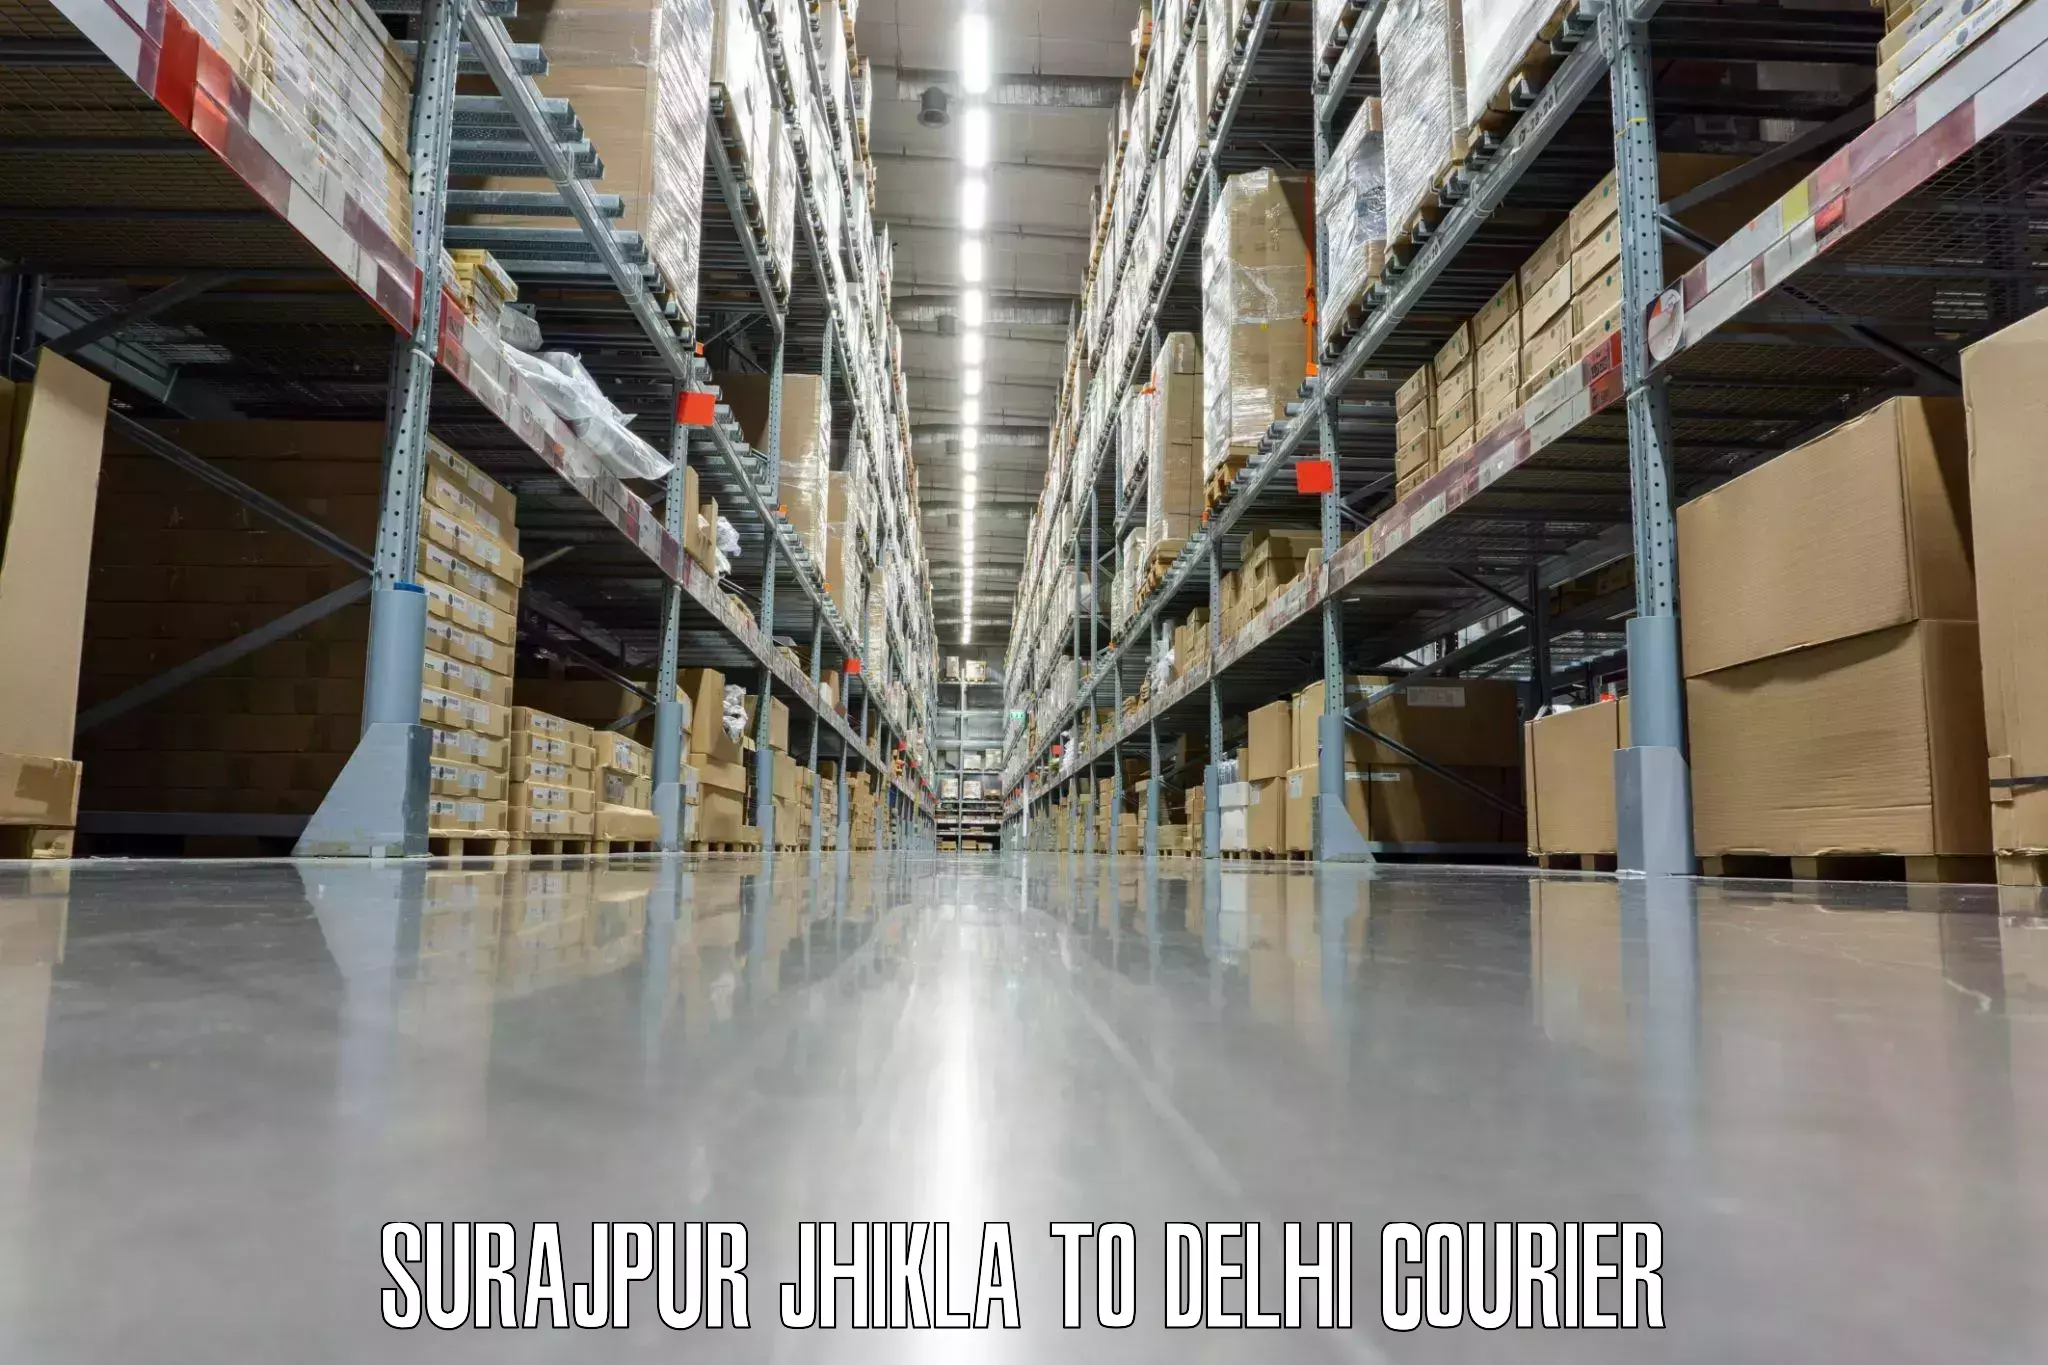 Baggage transport scheduler Surajpur Jhikla to IIT Delhi